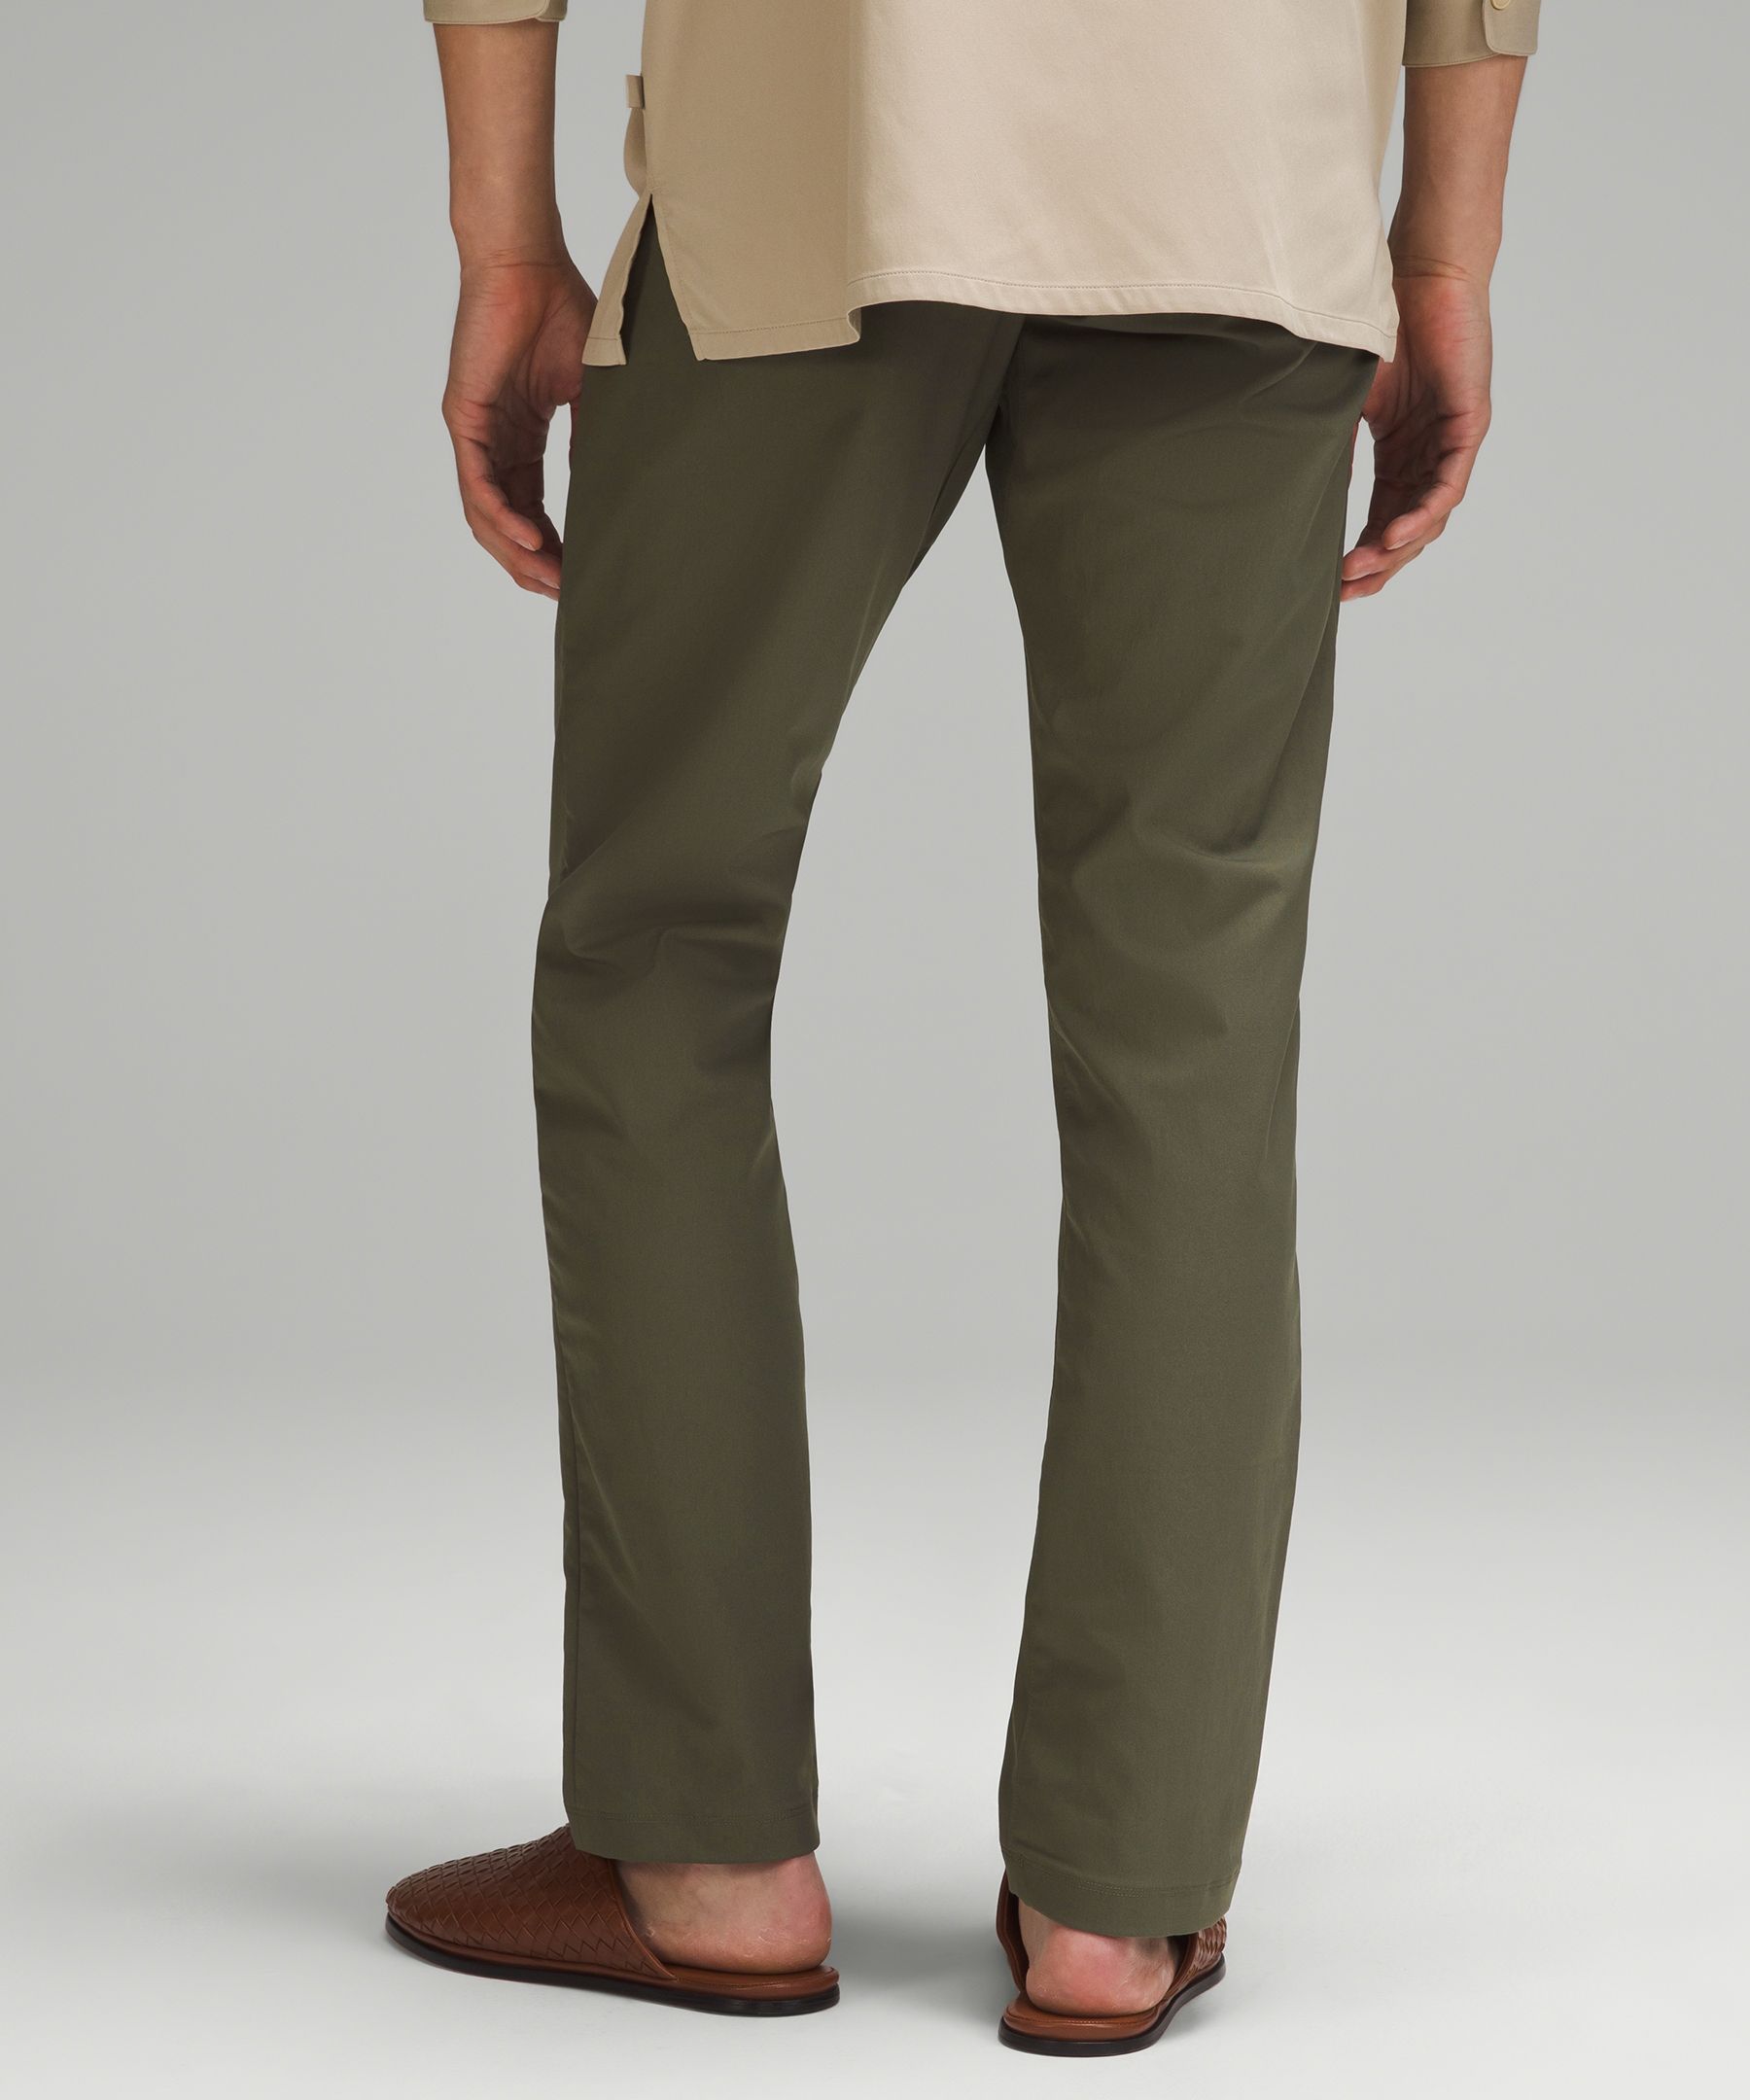 Lululemon athletica ABC Slim-Fit 5 Pocket Pant 30L *Utilitech, Men's  Trousers